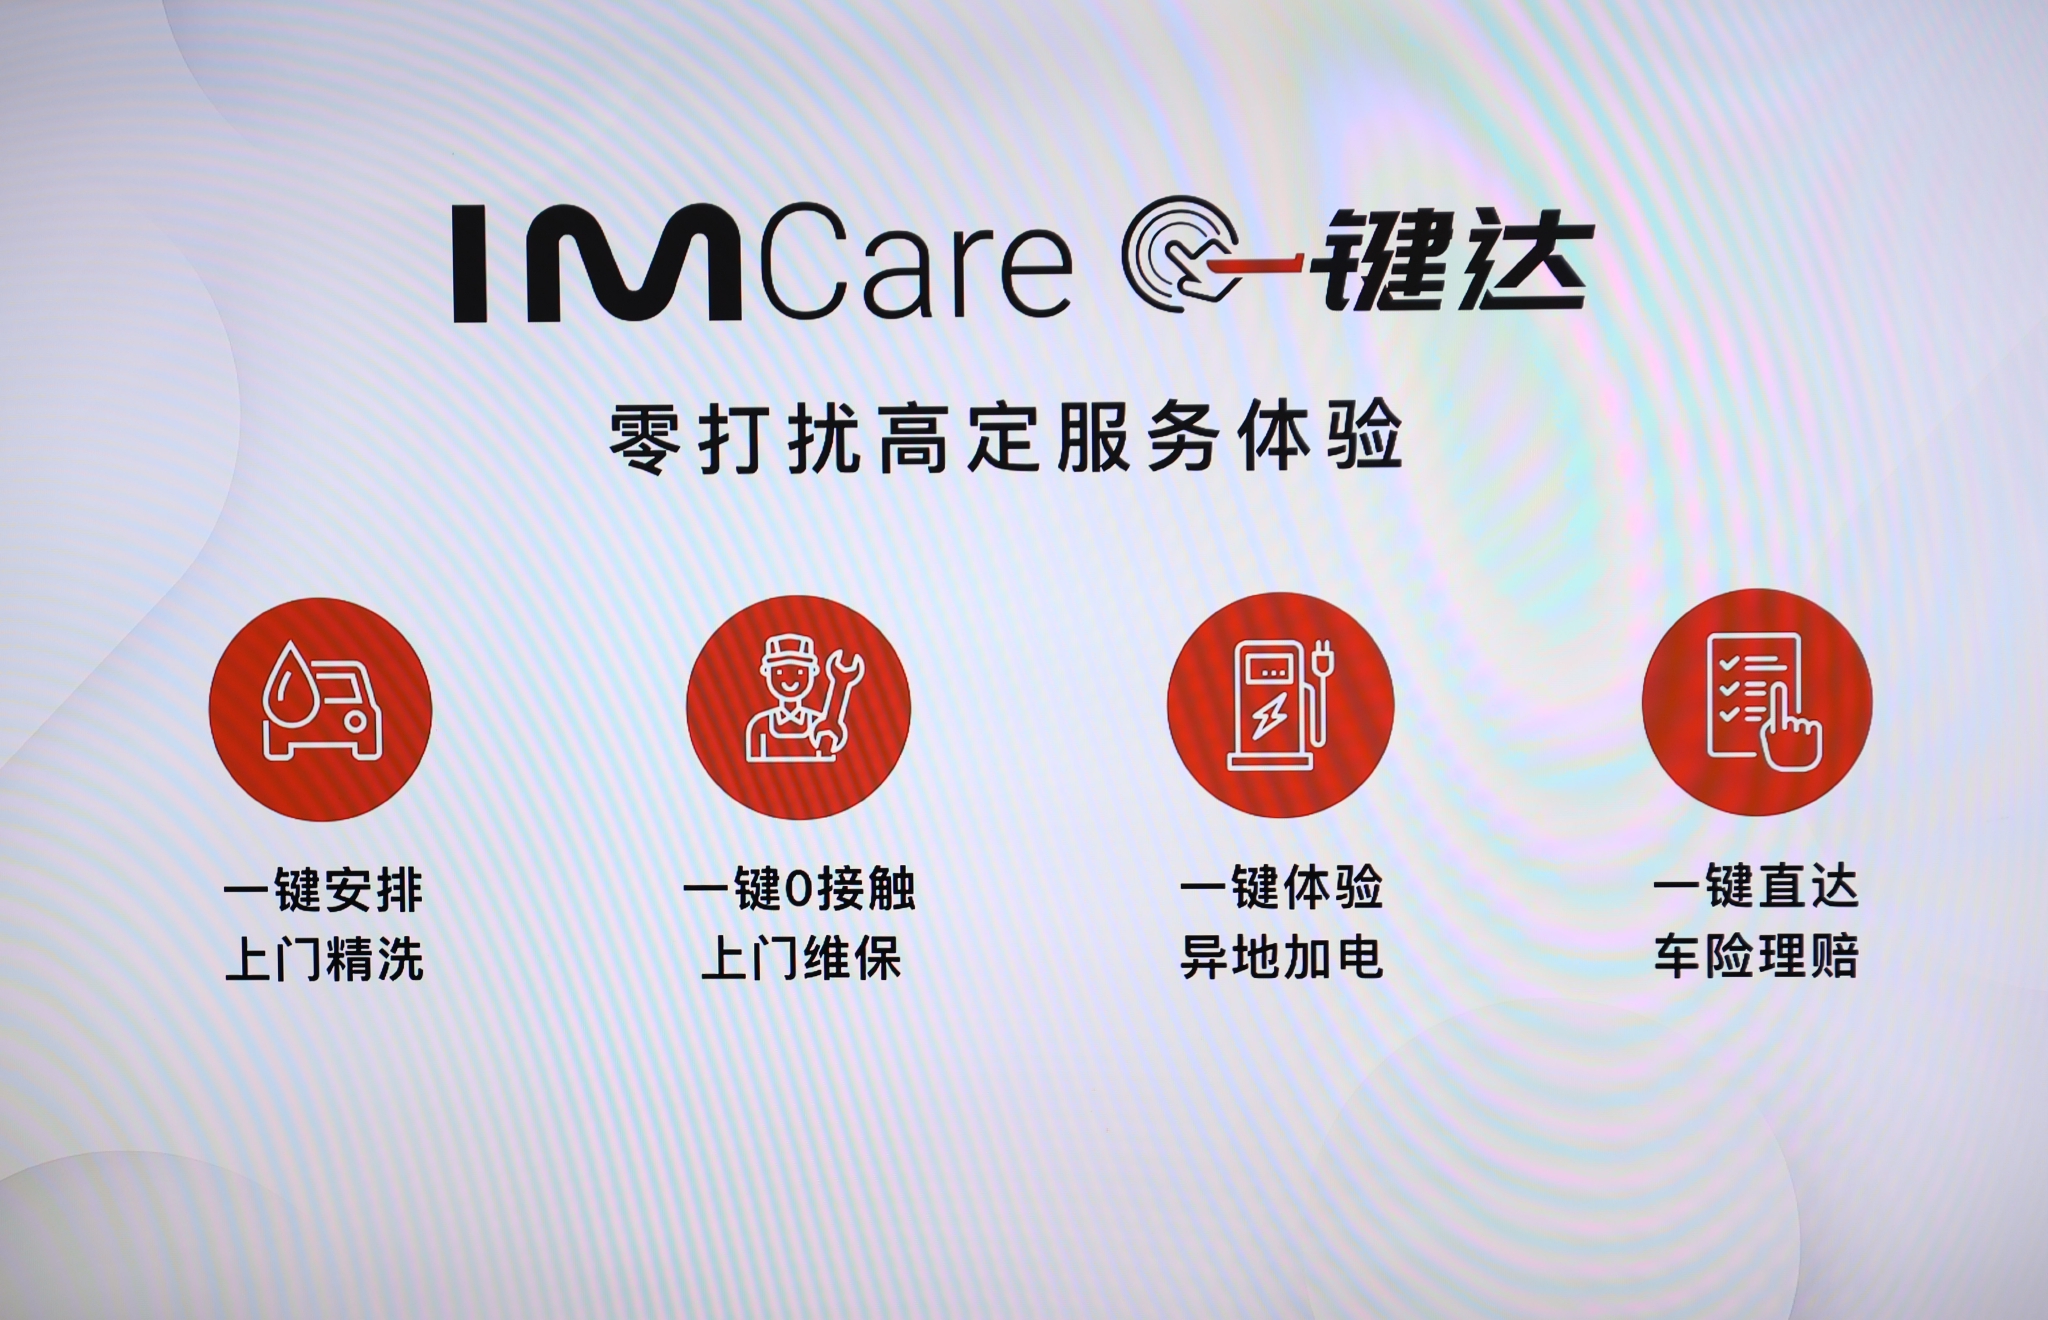 智己汽车服务品牌“IM Care一键达”正式发布